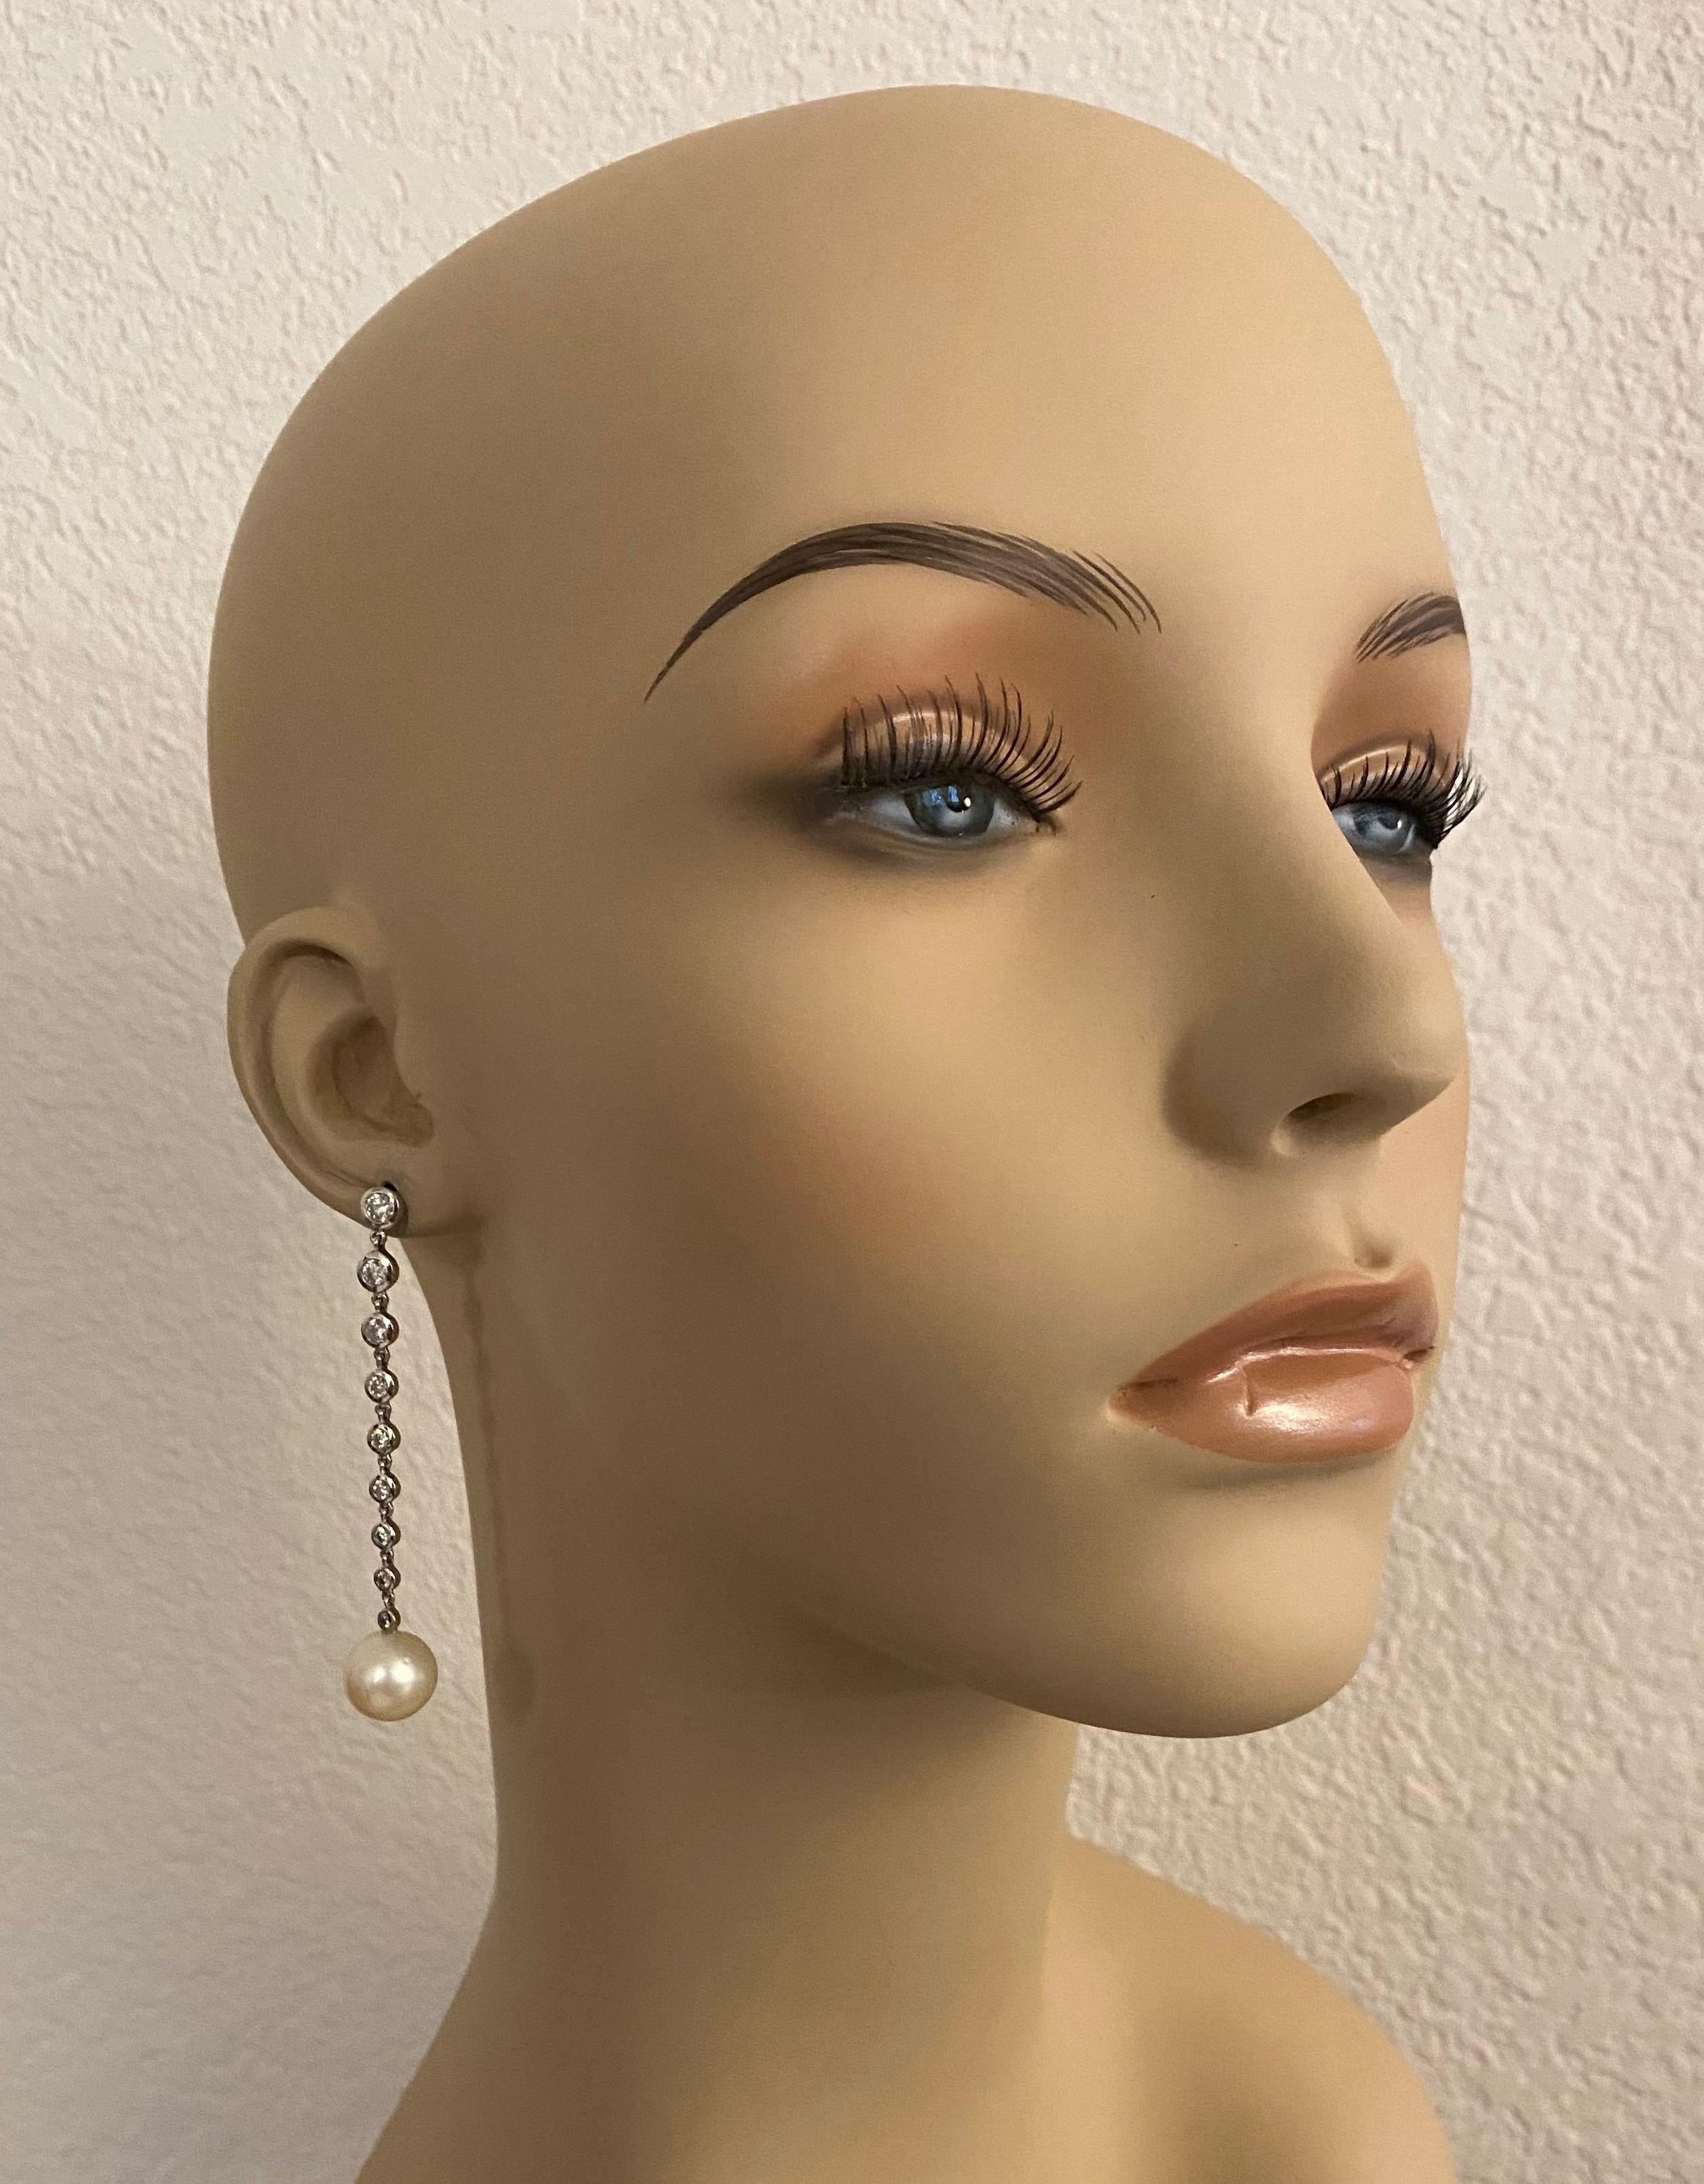 Südseeperlen und Diamanten bilden diese eleganten Ohrringe.  Die Perlen (Herkunft: Australien) messen 12 mm, sind cremeweiß und besitzen einen reichen Glanz.  Achtzehn Diamanten sind in Weißgold gefasst, in ihrer Größe abgestuft, von VVS-Reinheit